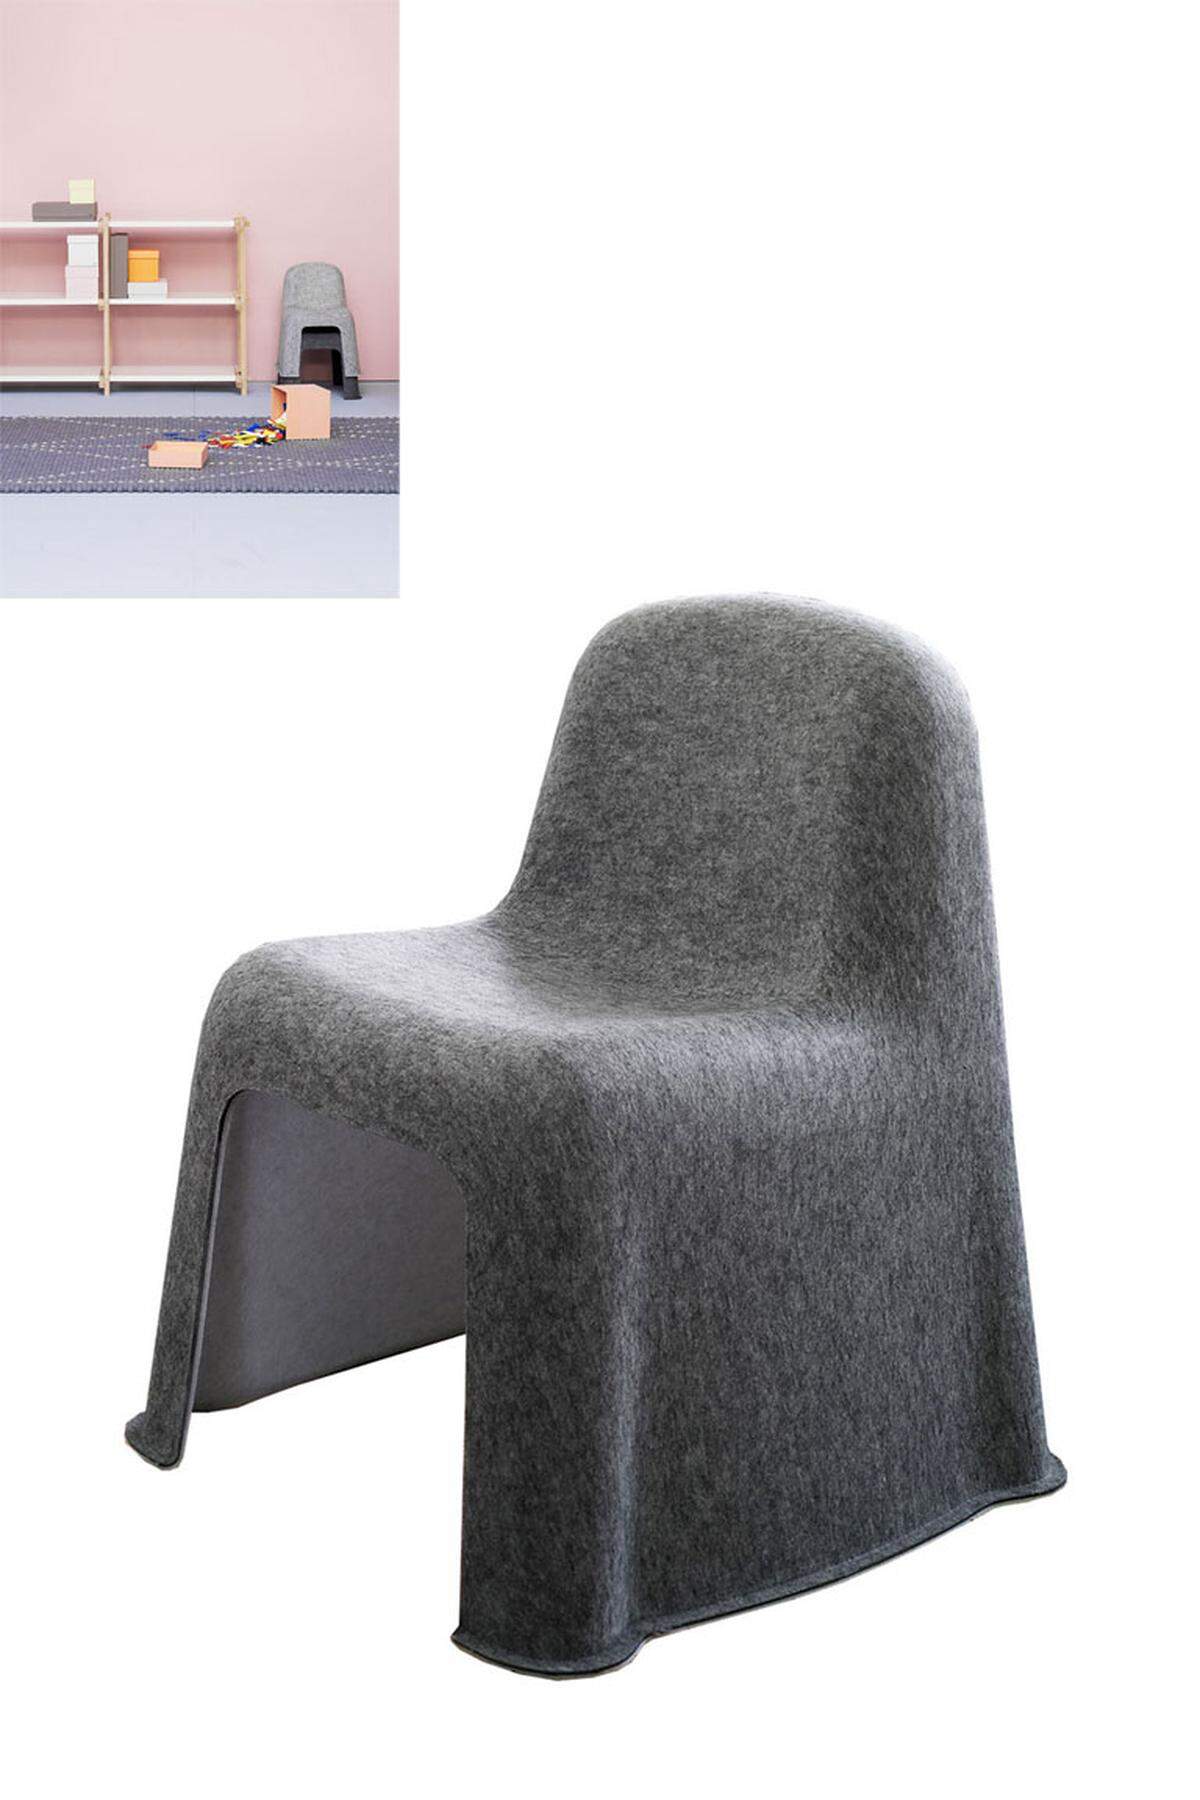 Der stapelbare "Little Nobody"-Stuhl von Hay ist aus einem Stück geformt und in einer einzigen Produktionsphase hergestellt. In den vergangenen Jahren wurde er mit zahlreichen renommierten Designpreisen bedacht (u.a. Design Plus Award 2009, Forum AID Award 2008).